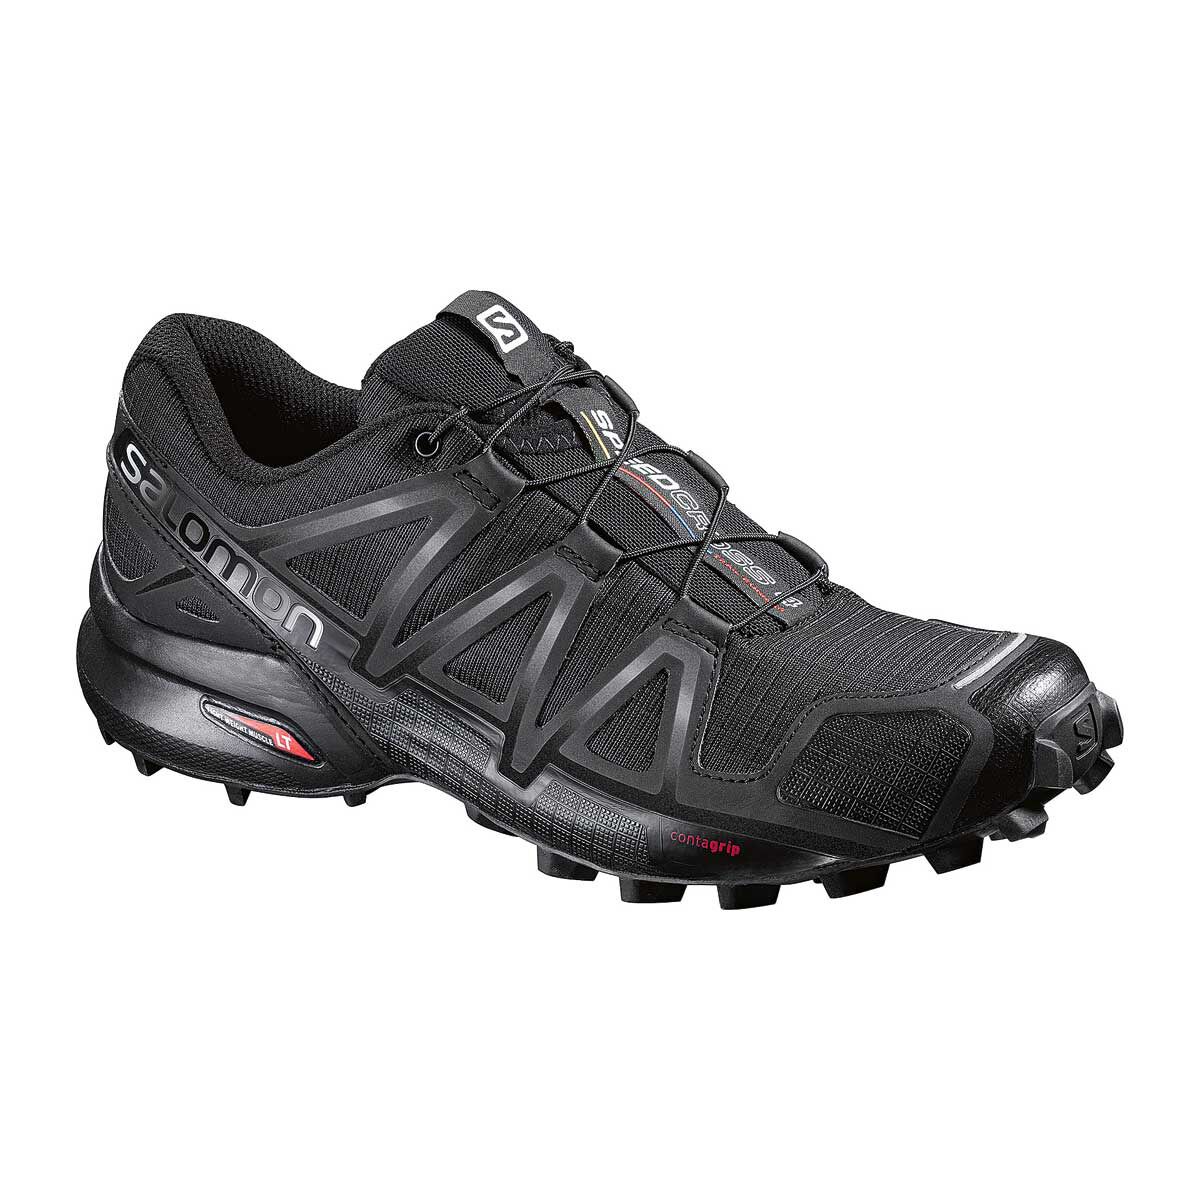 Men's \u0026 Women's Trail Running Shoes 